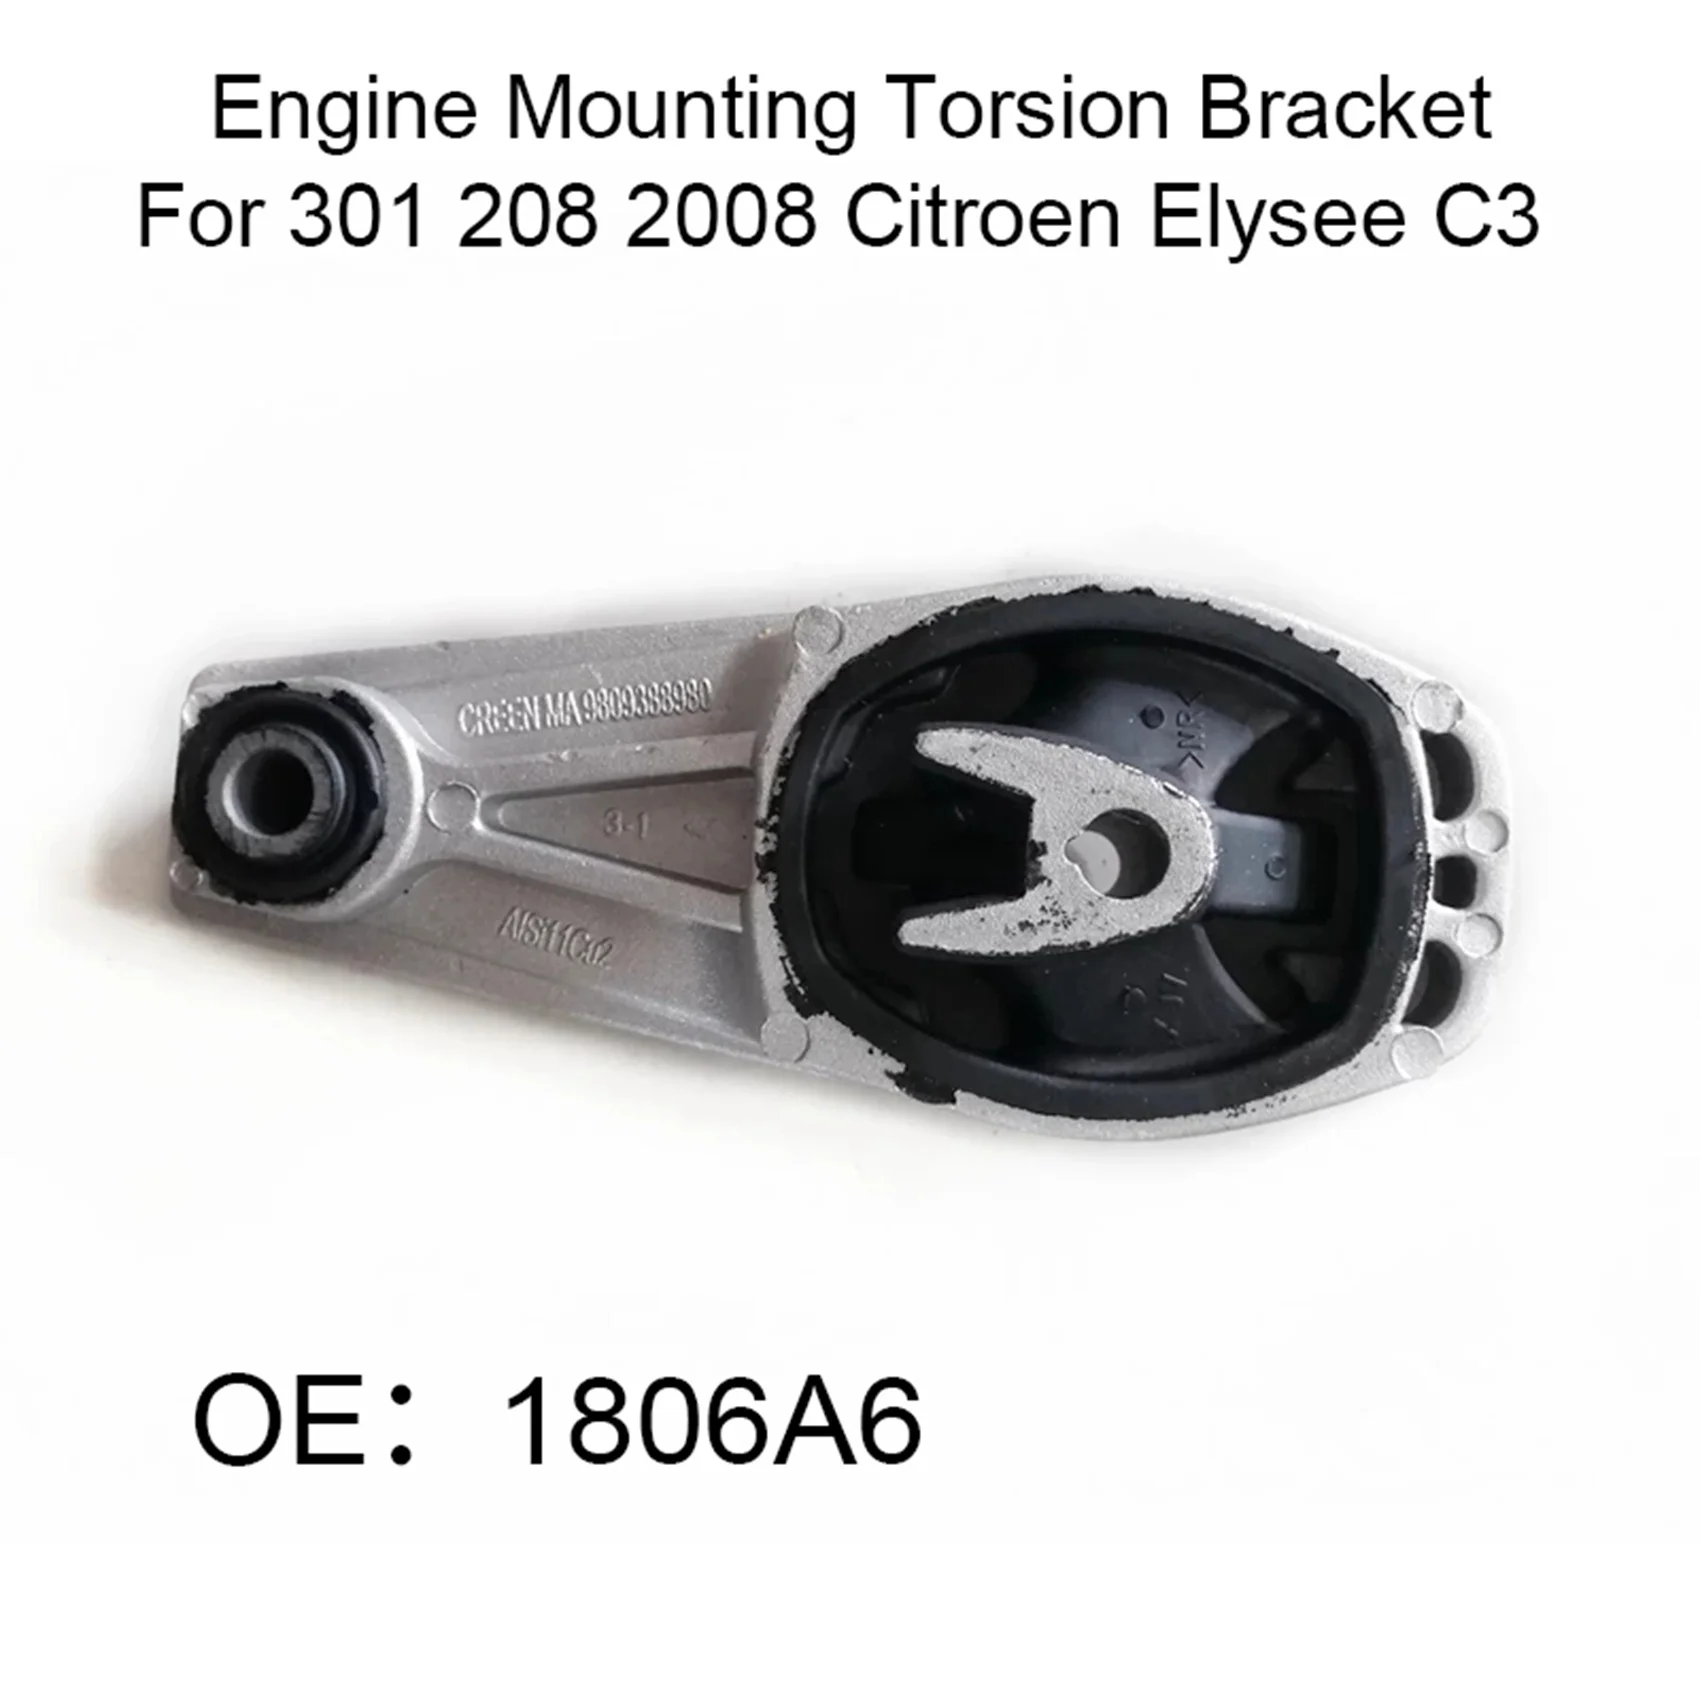 

Engine Mount Torsion Bracket for Peugeot 301 208 207 308 2008 -Citroen Elysee C3 DS3 C4 1806A6 9809388980 9802483780